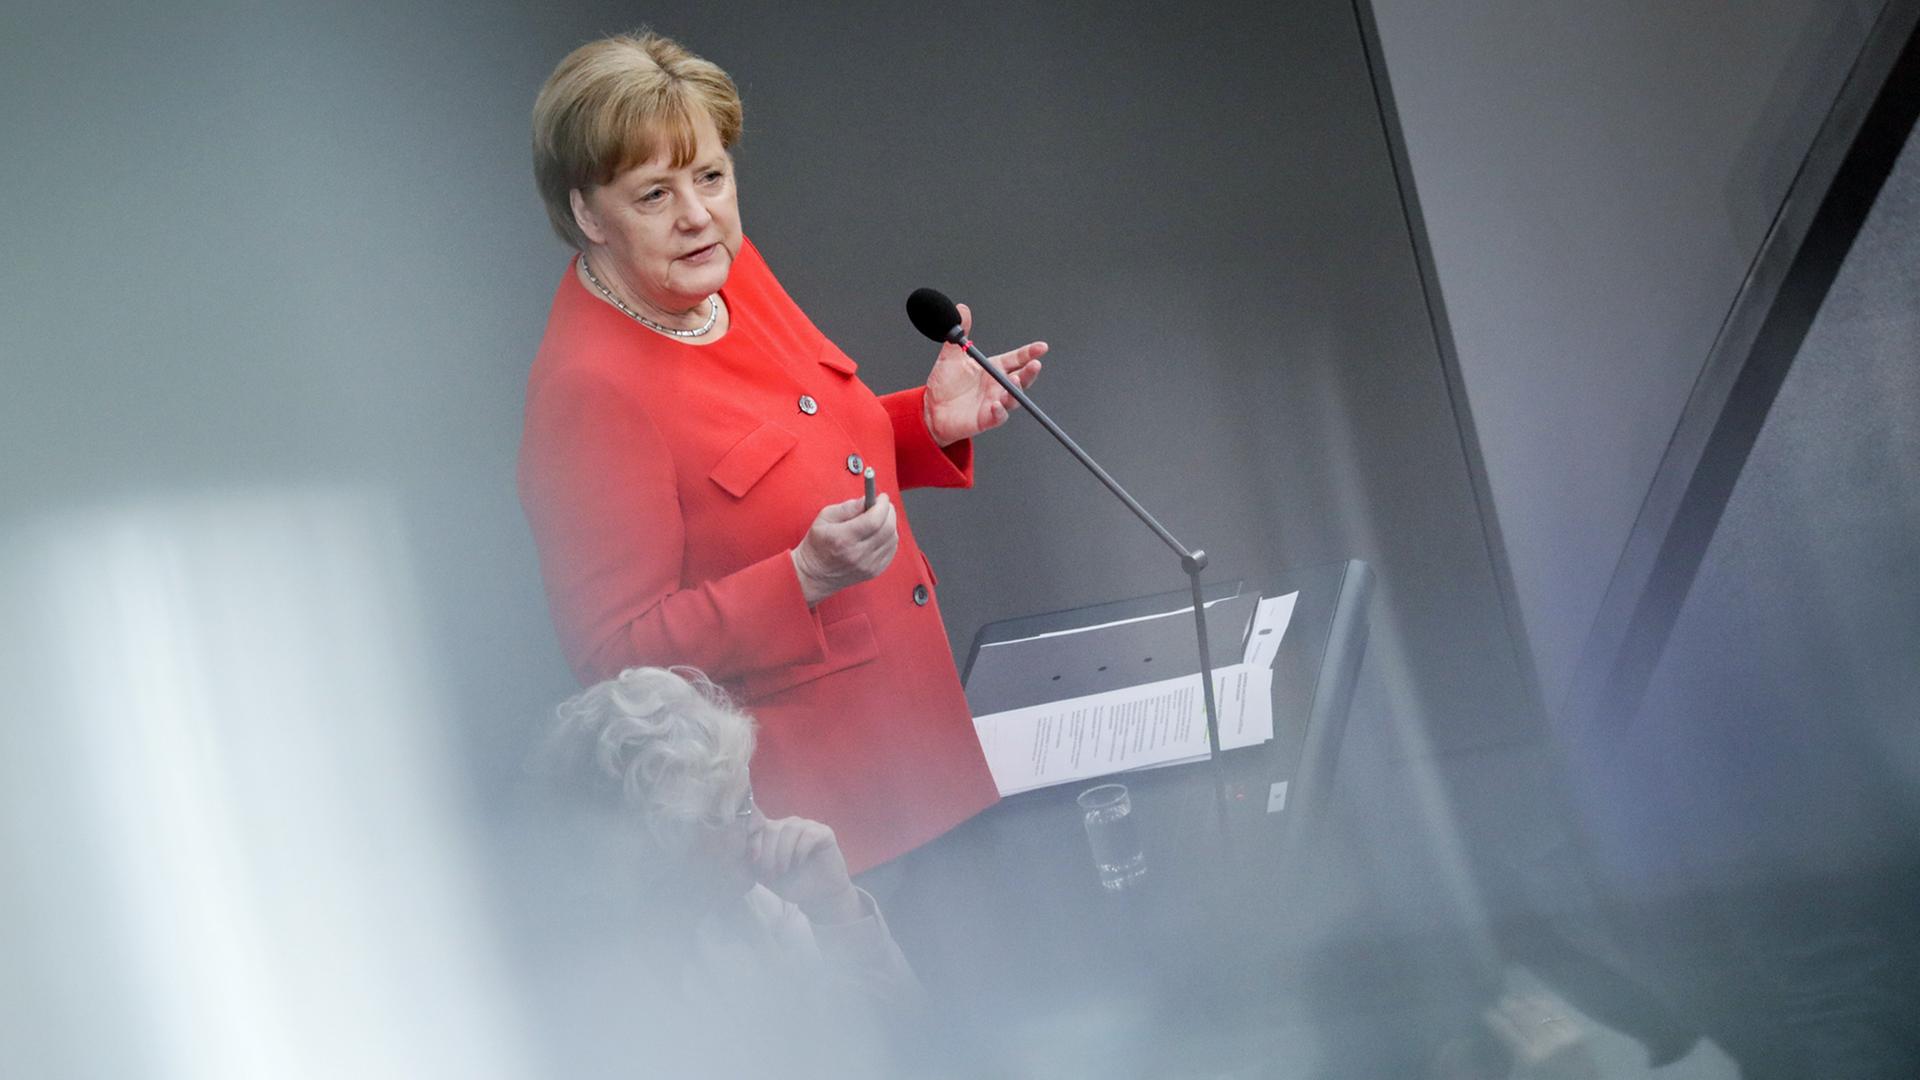 Bundeskanzlerin Angela Merkel, CDU, stellt sich erstmals im Rahmen einer Fragestunde im Bundestag den Fragen der Abgeordneten. Kein Regierungschef zuvor hatte sich in diese Fragerunde begeben. Merkel kommt mit diesem Auftritt einer Vereinbarung im Koalitionsvertrag von Union und SPD nach.